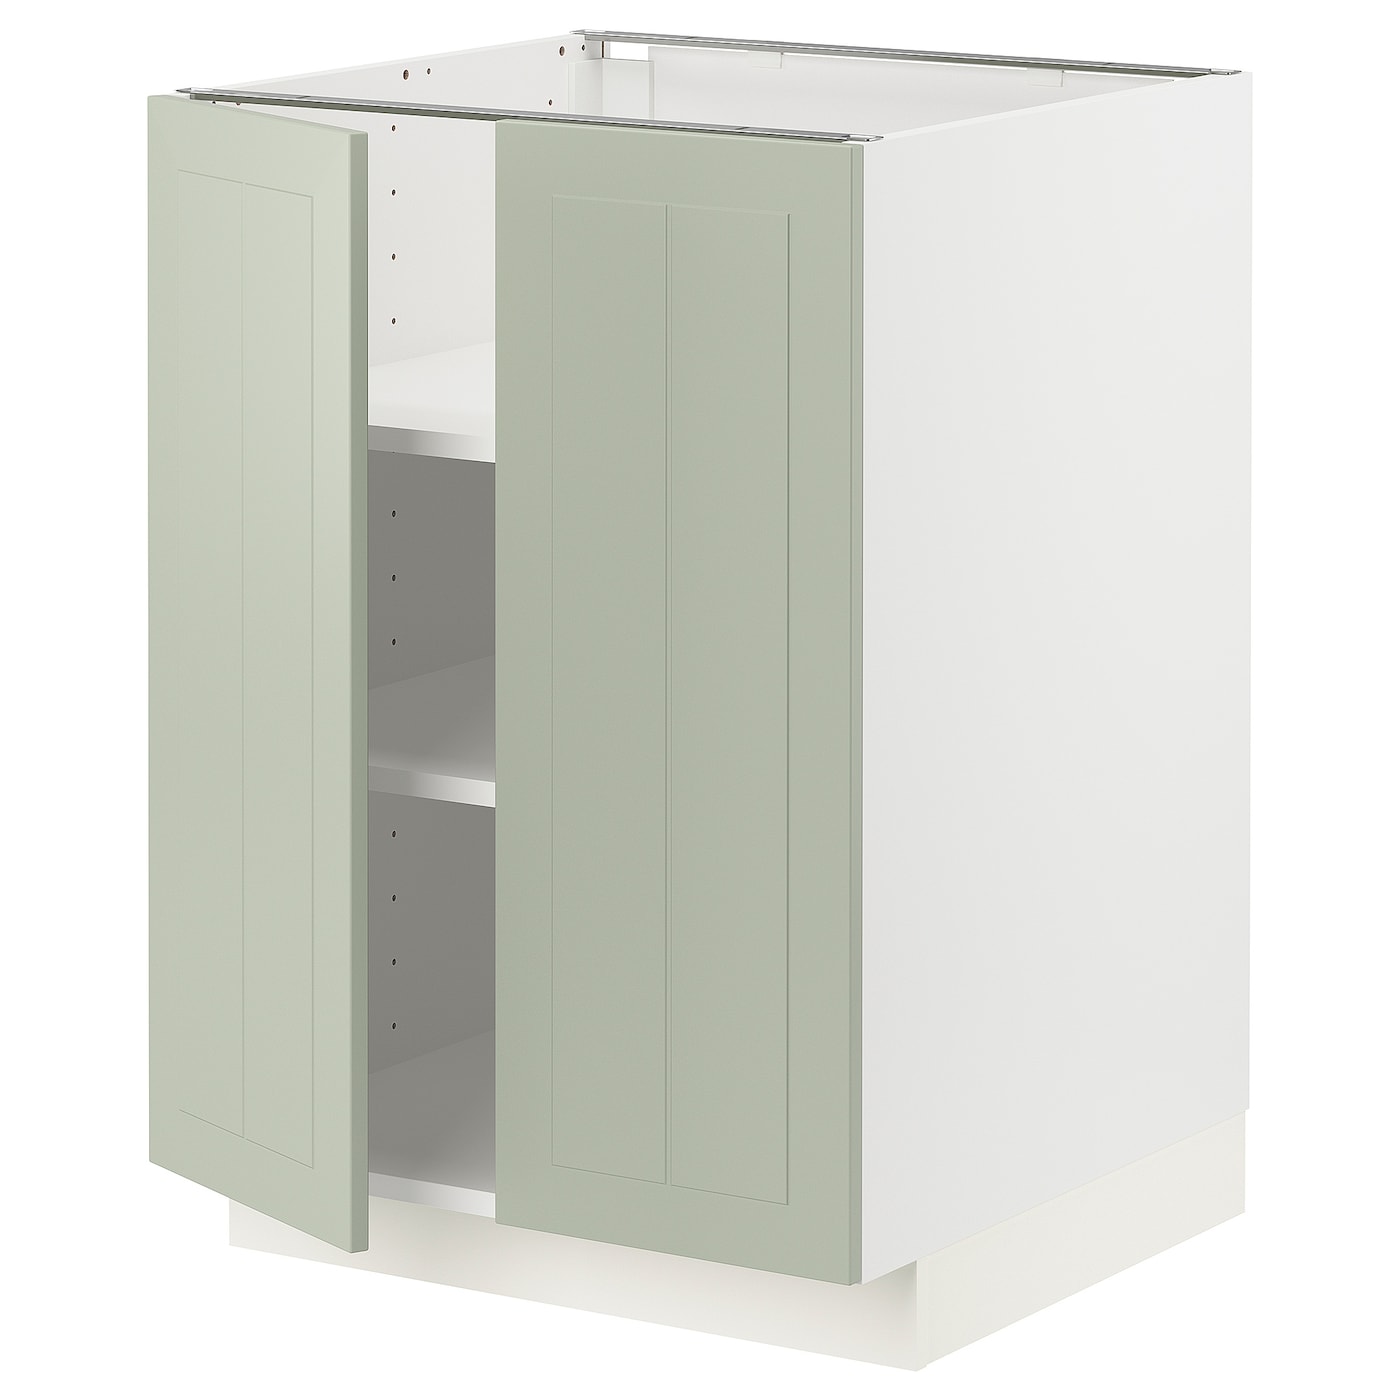 Напольный шкаф - IKEA METOD, 88x62x60см, белый/светло-зеленый, МЕТОД ИКЕА